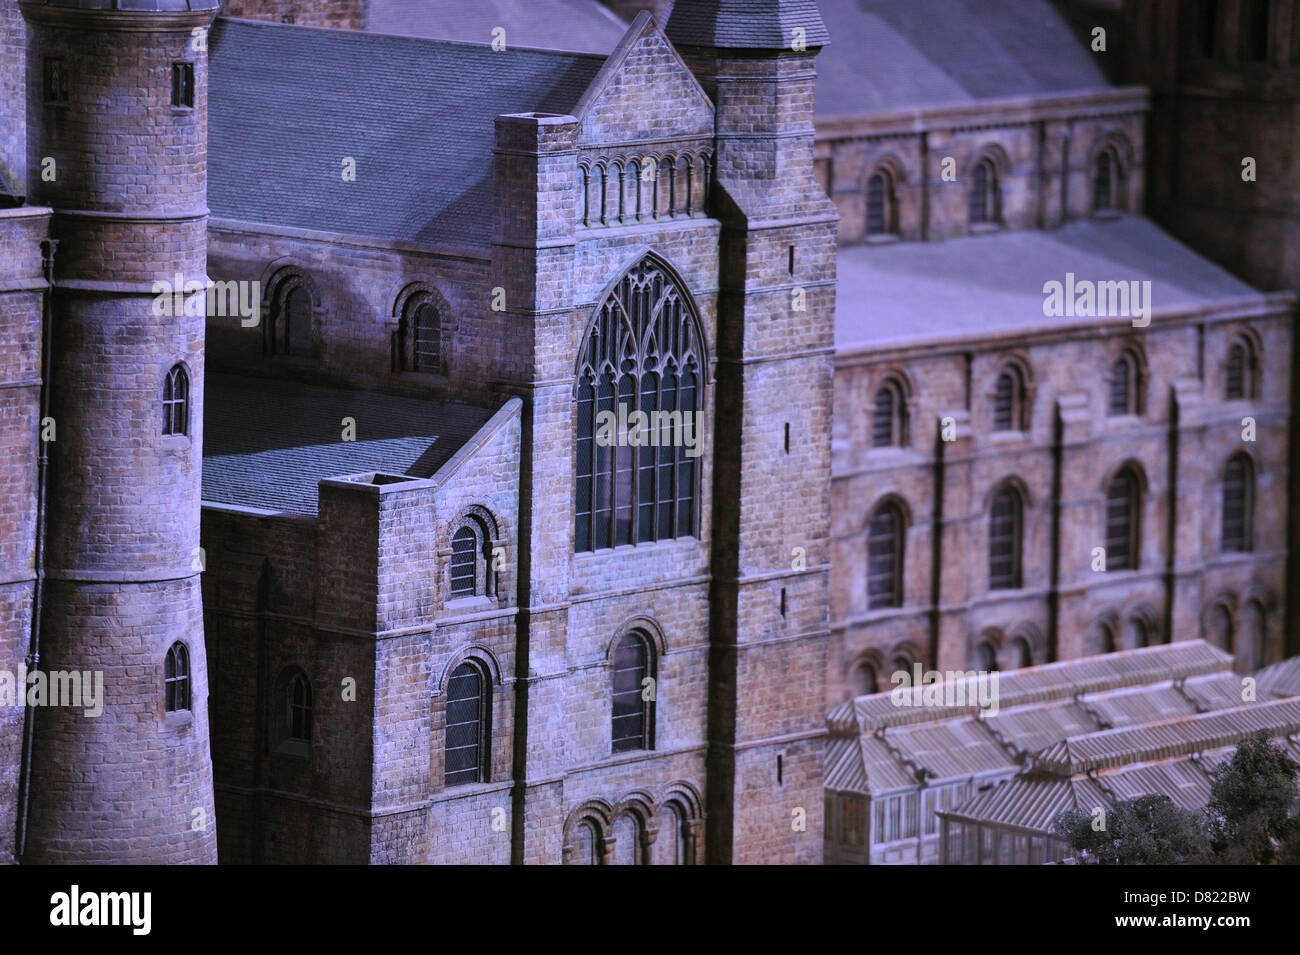 La realizzazione di Harry Potter - il castello di Hogwarts modello in scala di visualizzazione multimediale tenutasi a Warner Bros Studios di Londra. Londra, Inghilterra - Foto Stock